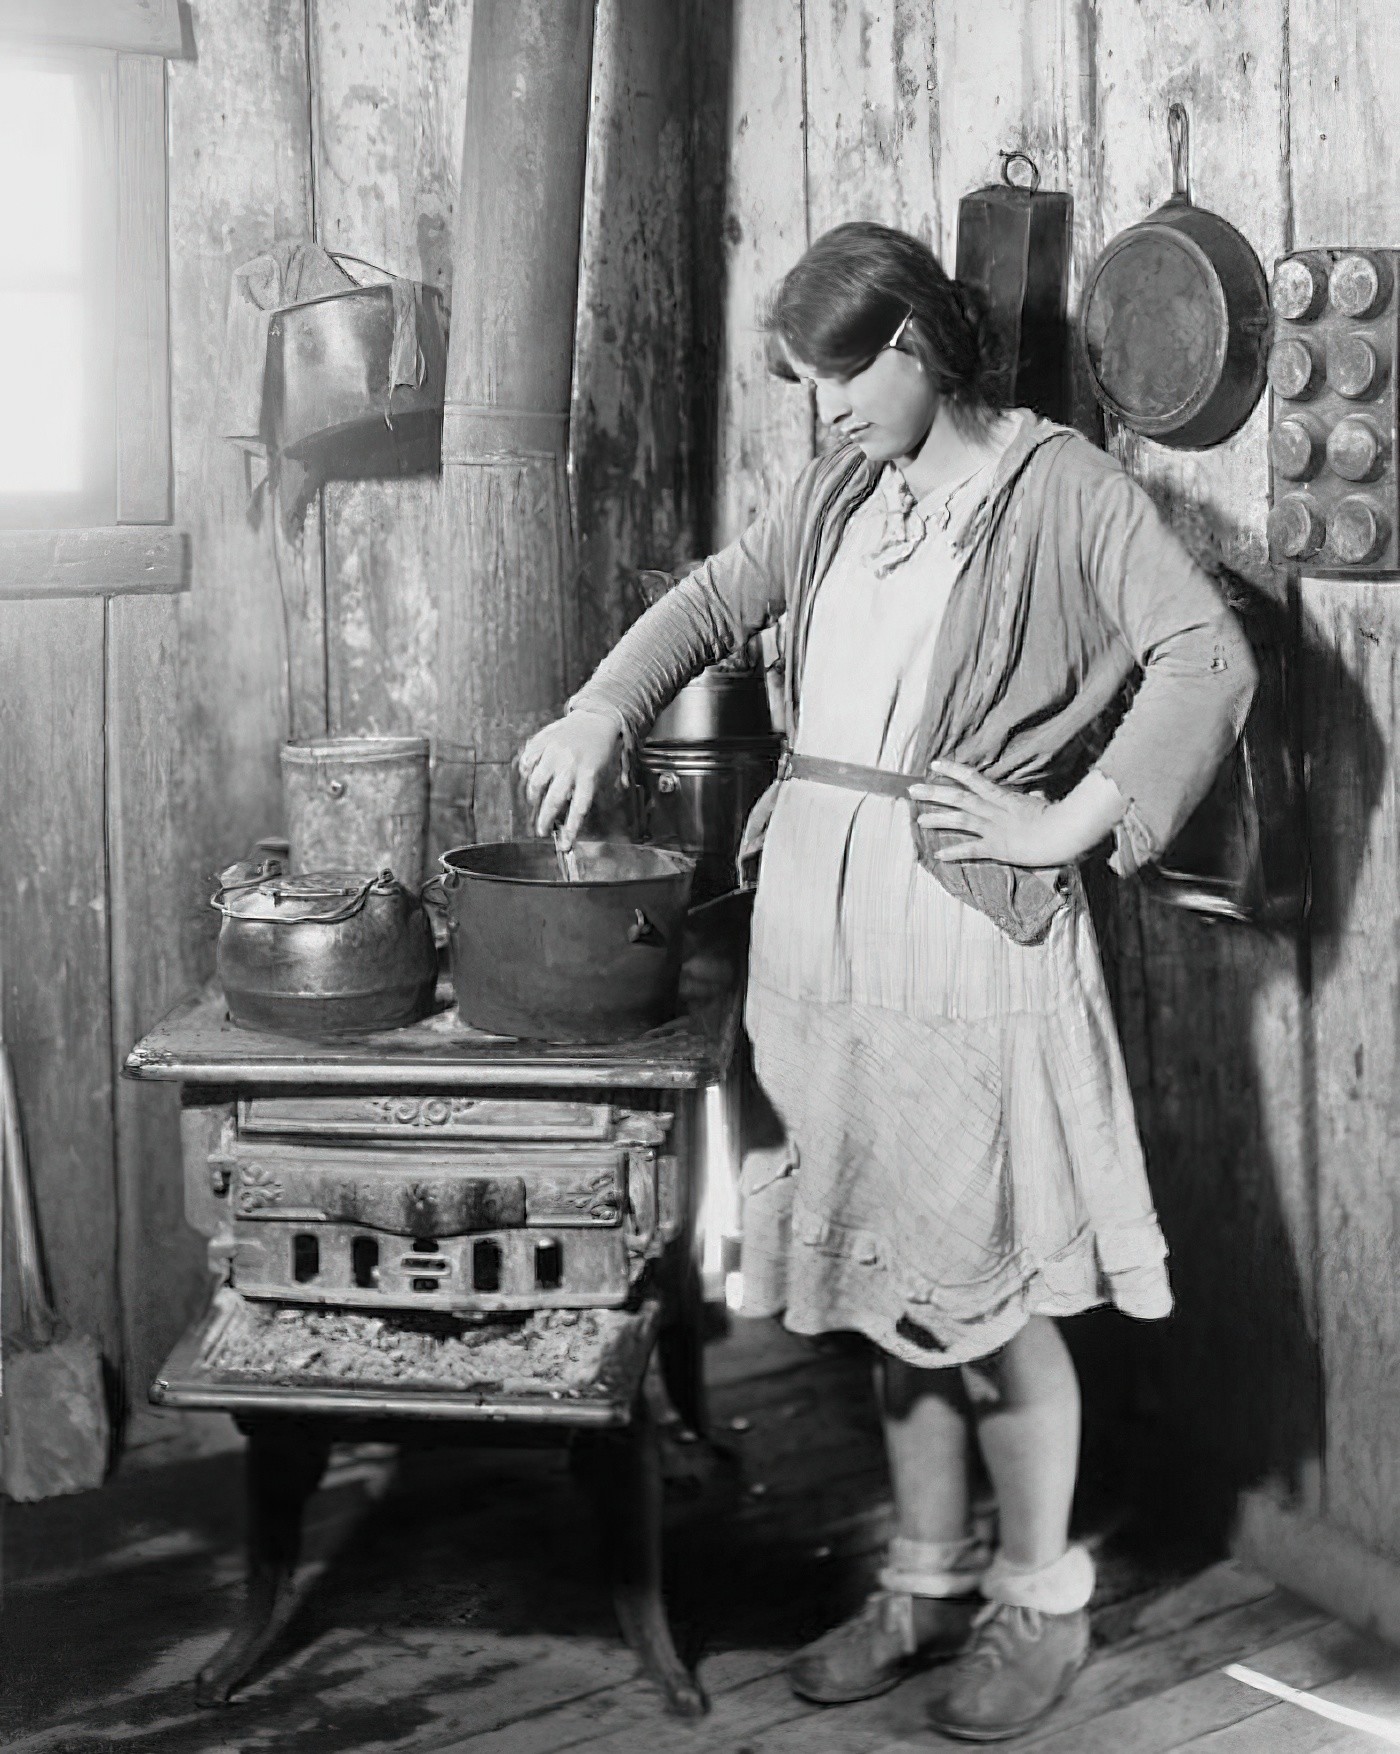 28. Дочь обедневшего фермера из Арканзаса готовит еду на старой плите, пока ее мать в туберкулезном санатории во время Великой депрессии. Фото Красного Креста, примерно 1930 г.